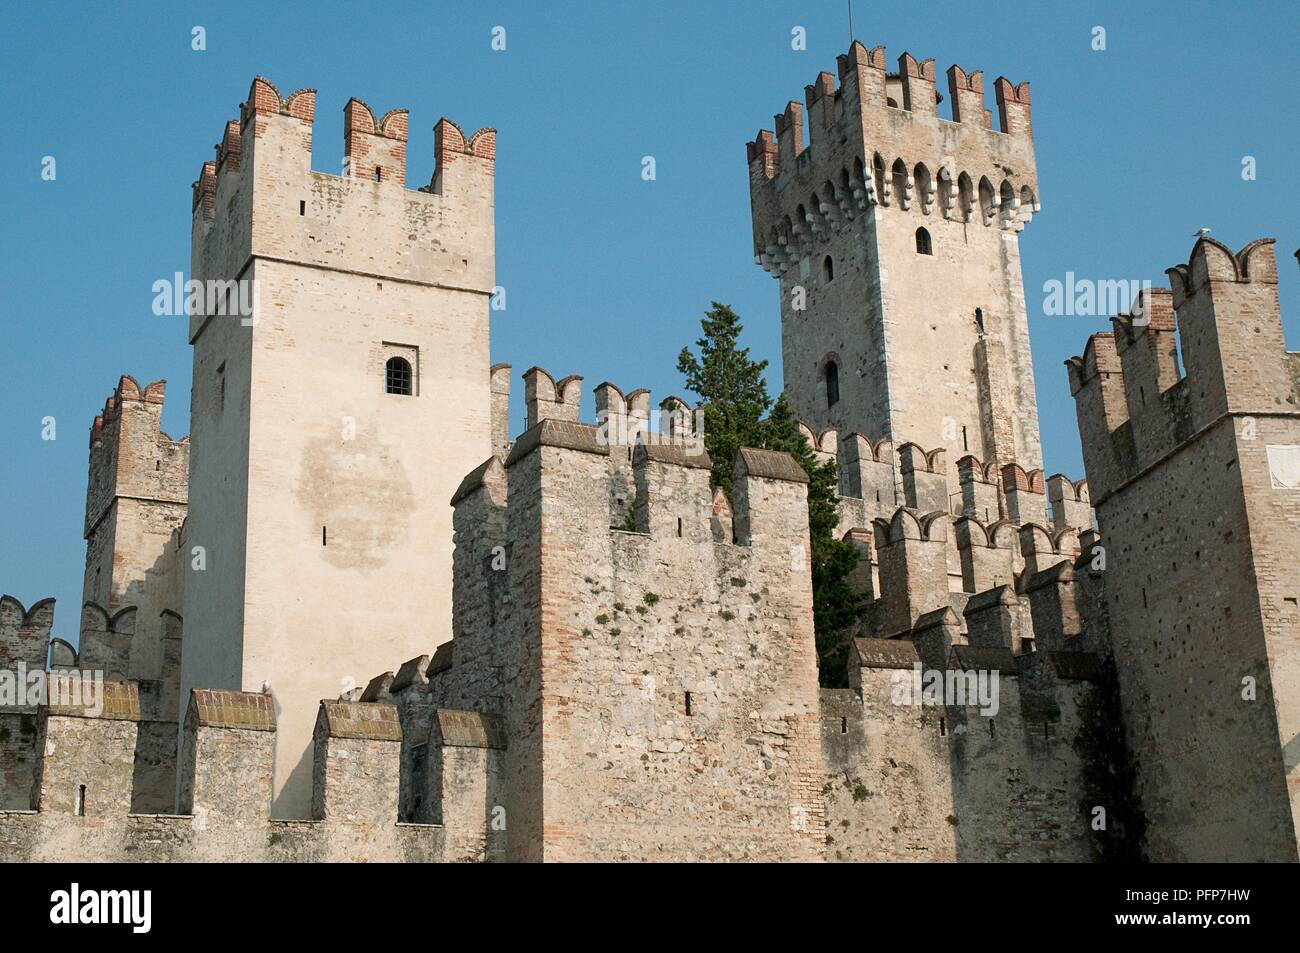 Italy, Lombardy region, Lago di Garda or Benaco (Lake Garda), Sirmione  town, Castello di Sirmione Rocca Scaligera, castle exterior Stock Photo -  Alamy